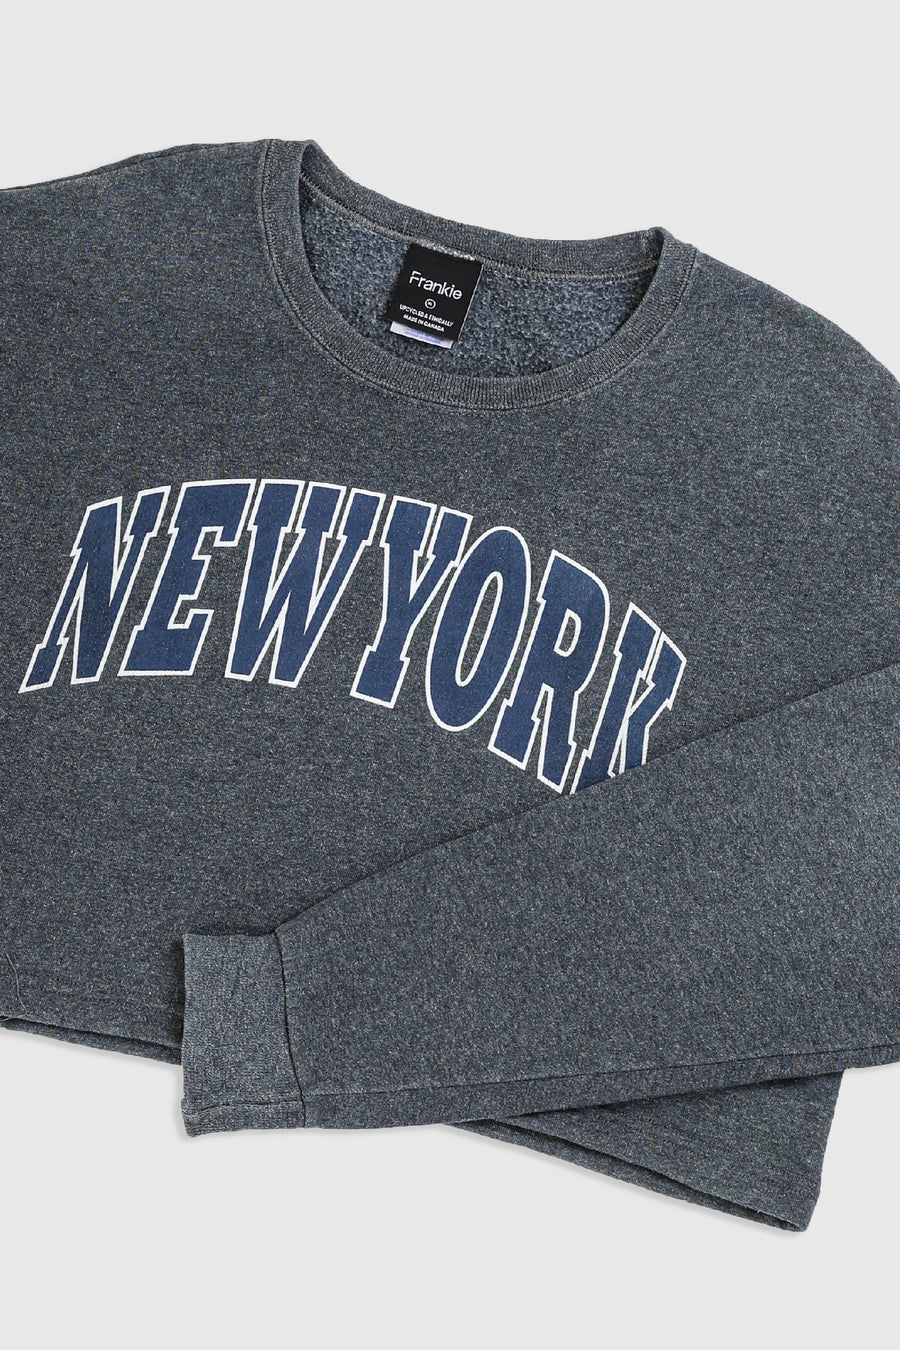 Rework New York Crop Sweatshirt - XL